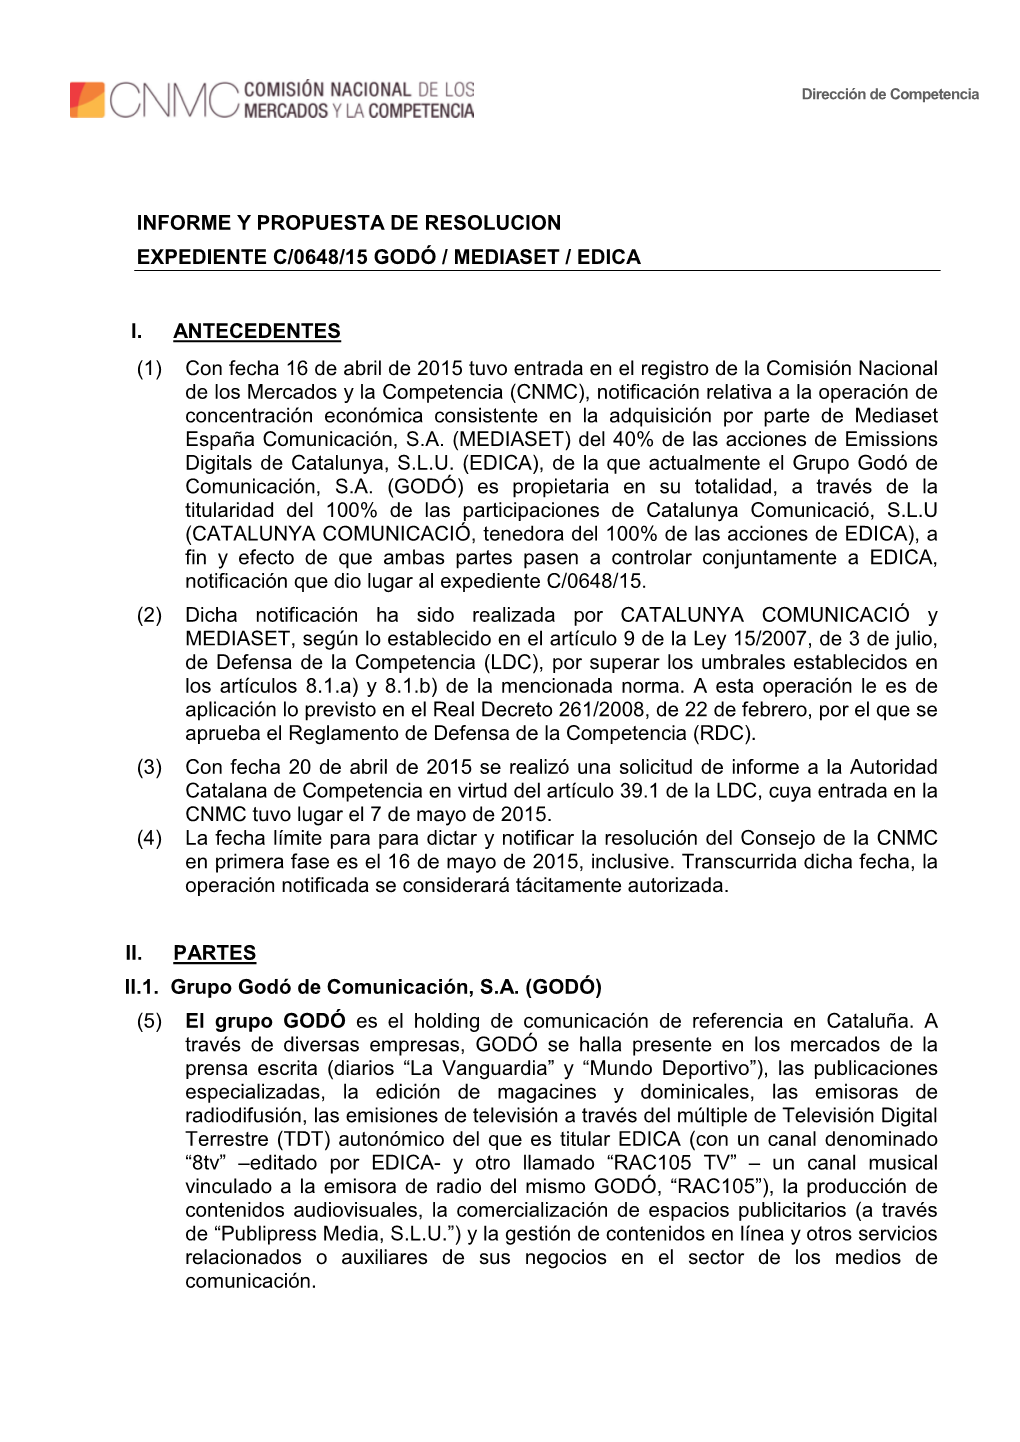 Informe Y Propuesta De Resolucion Expediente C/0648/15 Godó / Mediaset / Edica